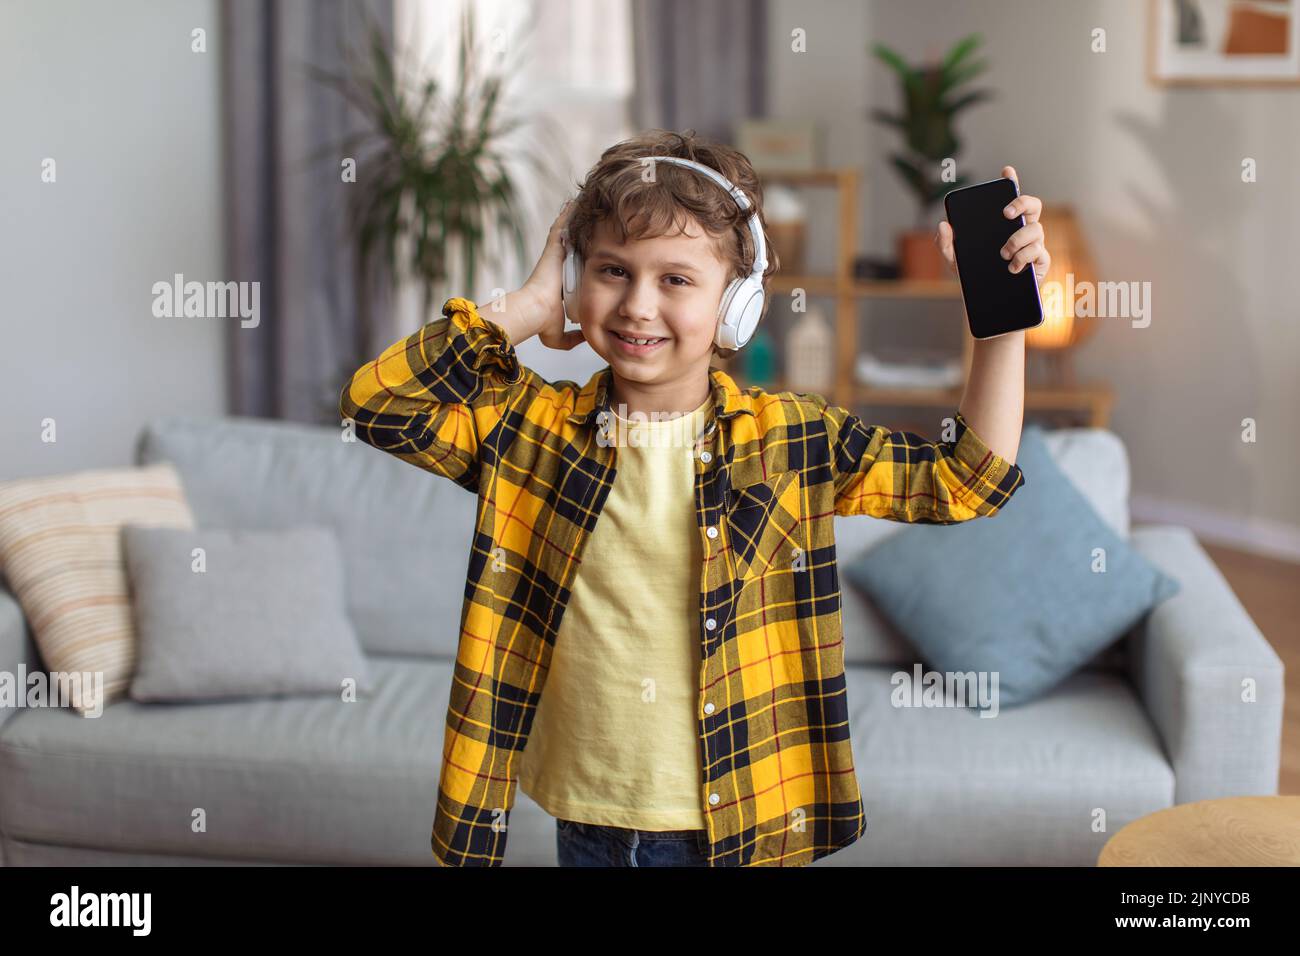 Musik-App für Kinder. Fröhlicher kleiner Junge, der Musik über Kopfhörer genießt und der Kamera das Smartphone mit leerem Bildschirm zeigt Stockfoto